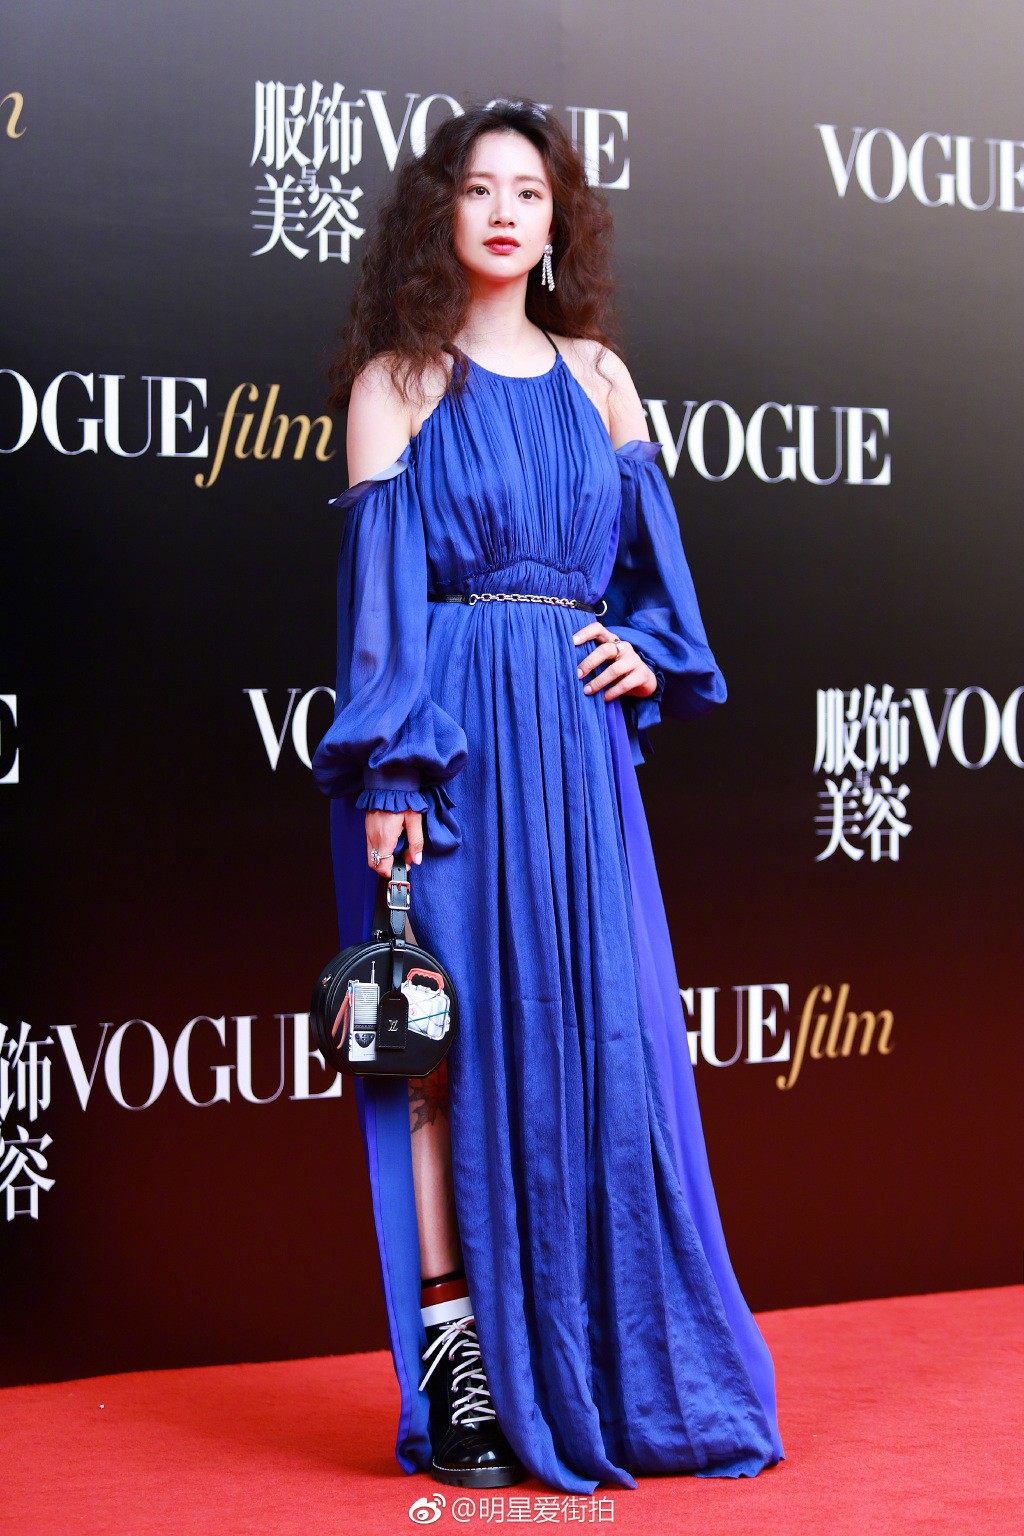 Thảm đỏ Vogue: Angela Baby trở thành tâm điểm vì đẹp xuất sắc, lấn át Dương Mịch - Lưu Thi Thi - Ảnh 14.